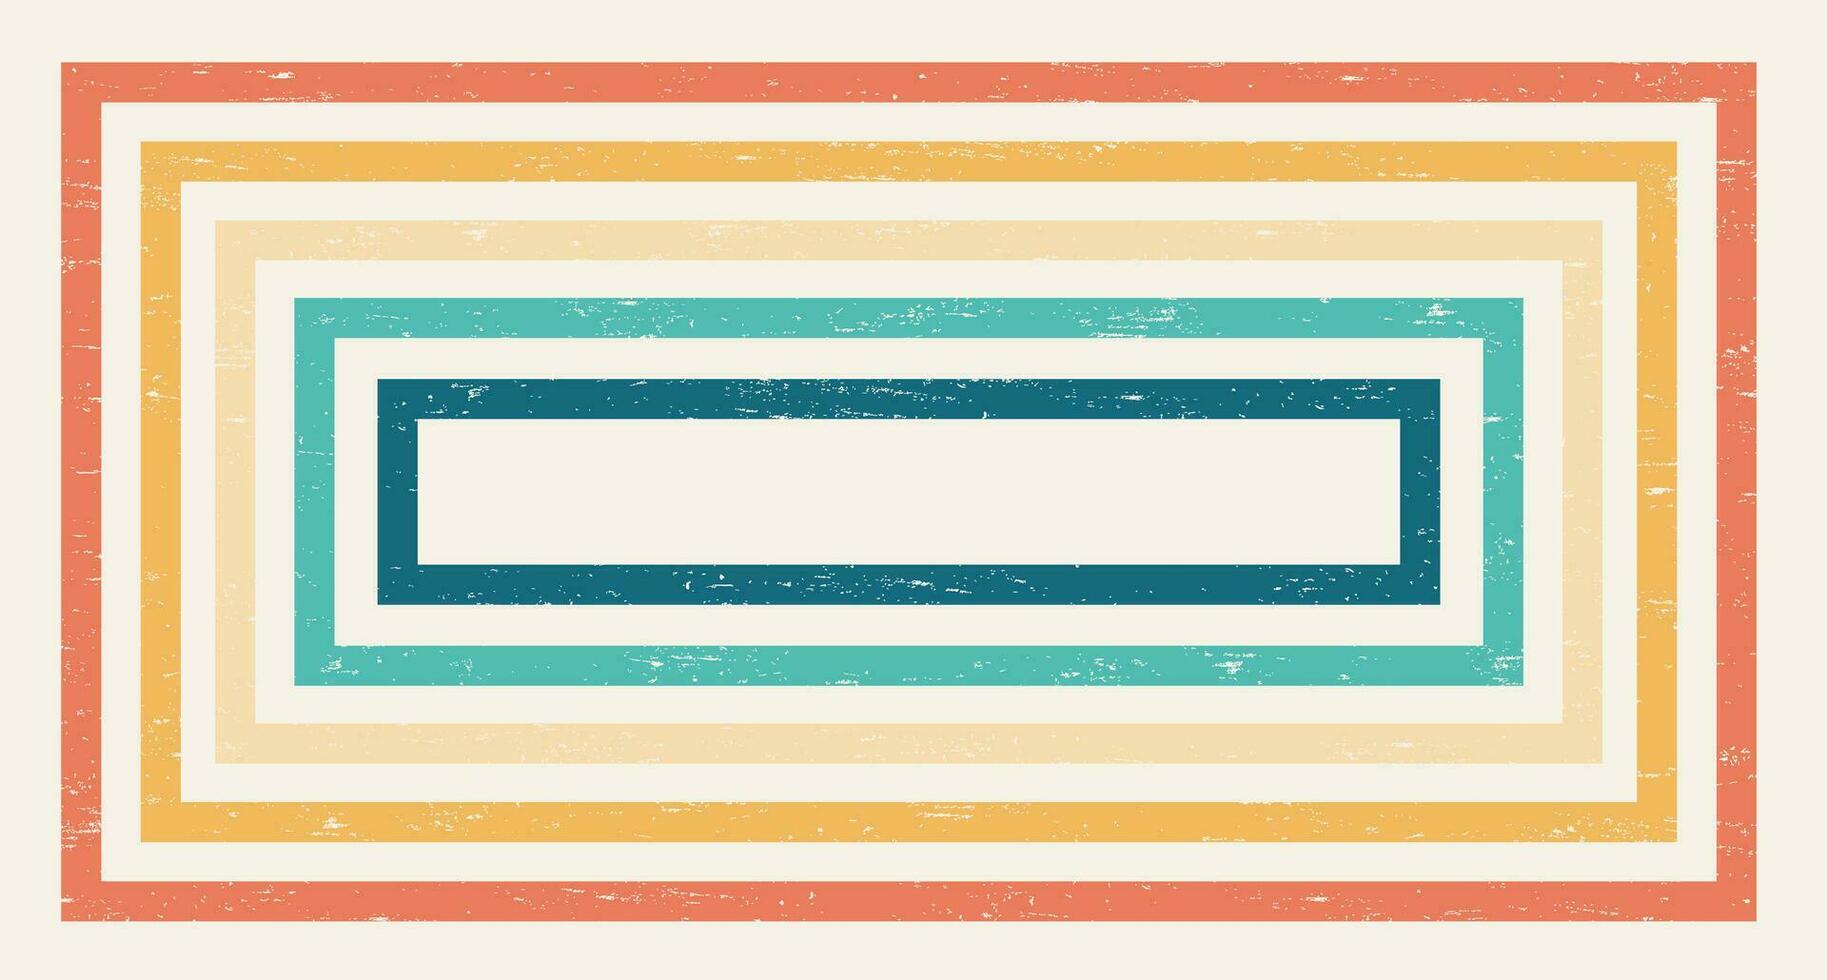 abstrato colorida vintage 1970 hippie retro mínimo à moda papel de parede fundo do arco Iris groovy ondulado linha Projeto com sujo textura. usar para pano, têxtil, poster, bandeira, decorativo, parede arte. vetor